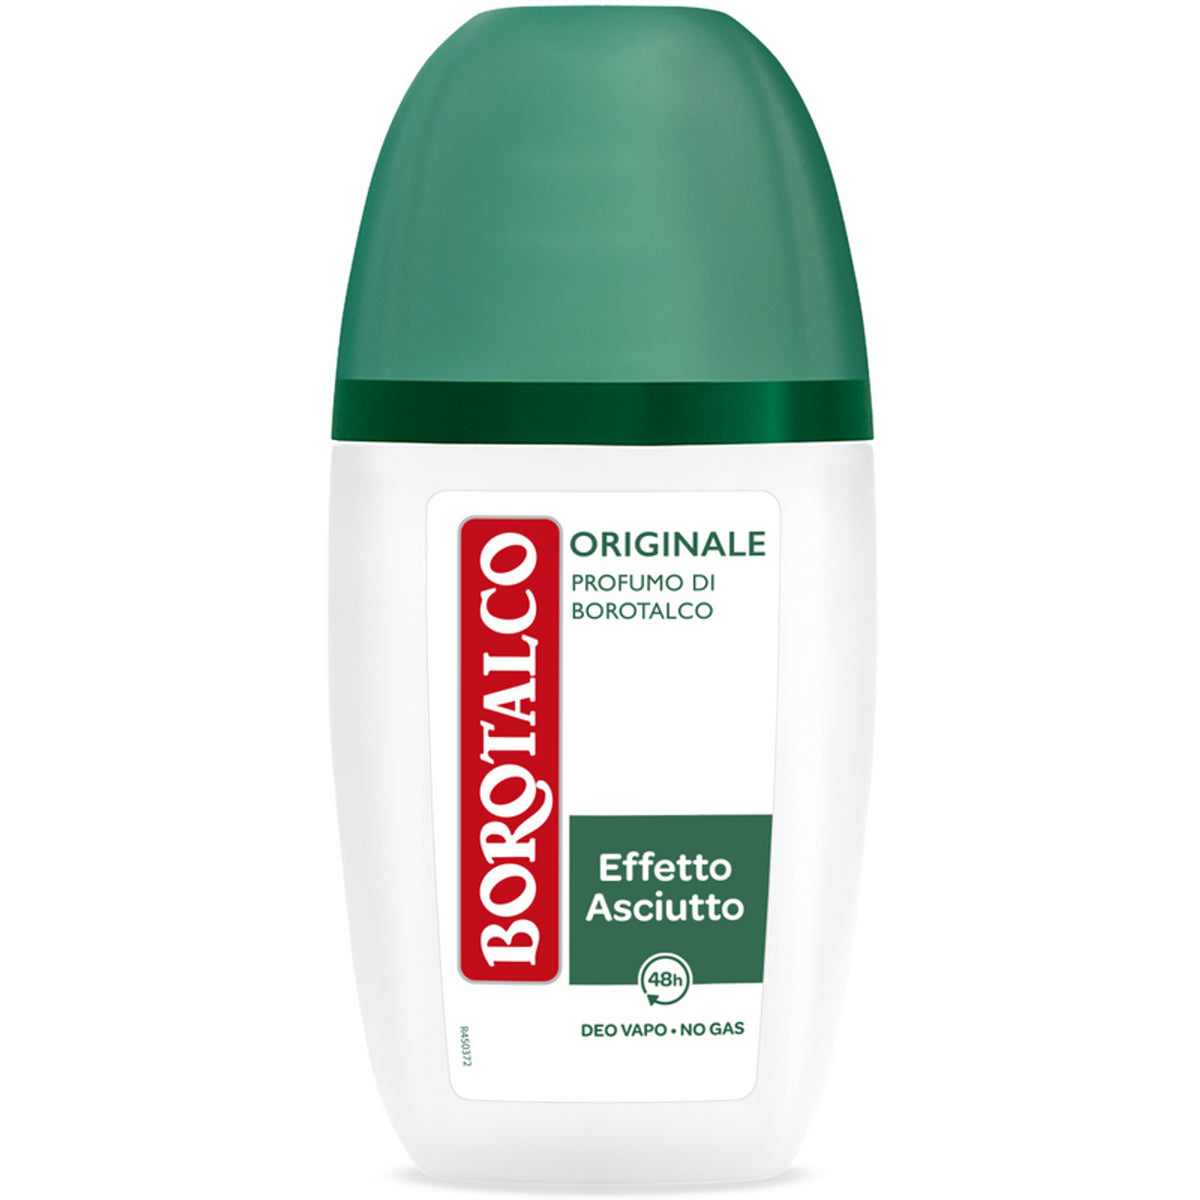 Borotalco Deodorante Originale Profumo Di Borotalco Effetto Asciutto Vapo 75 ml